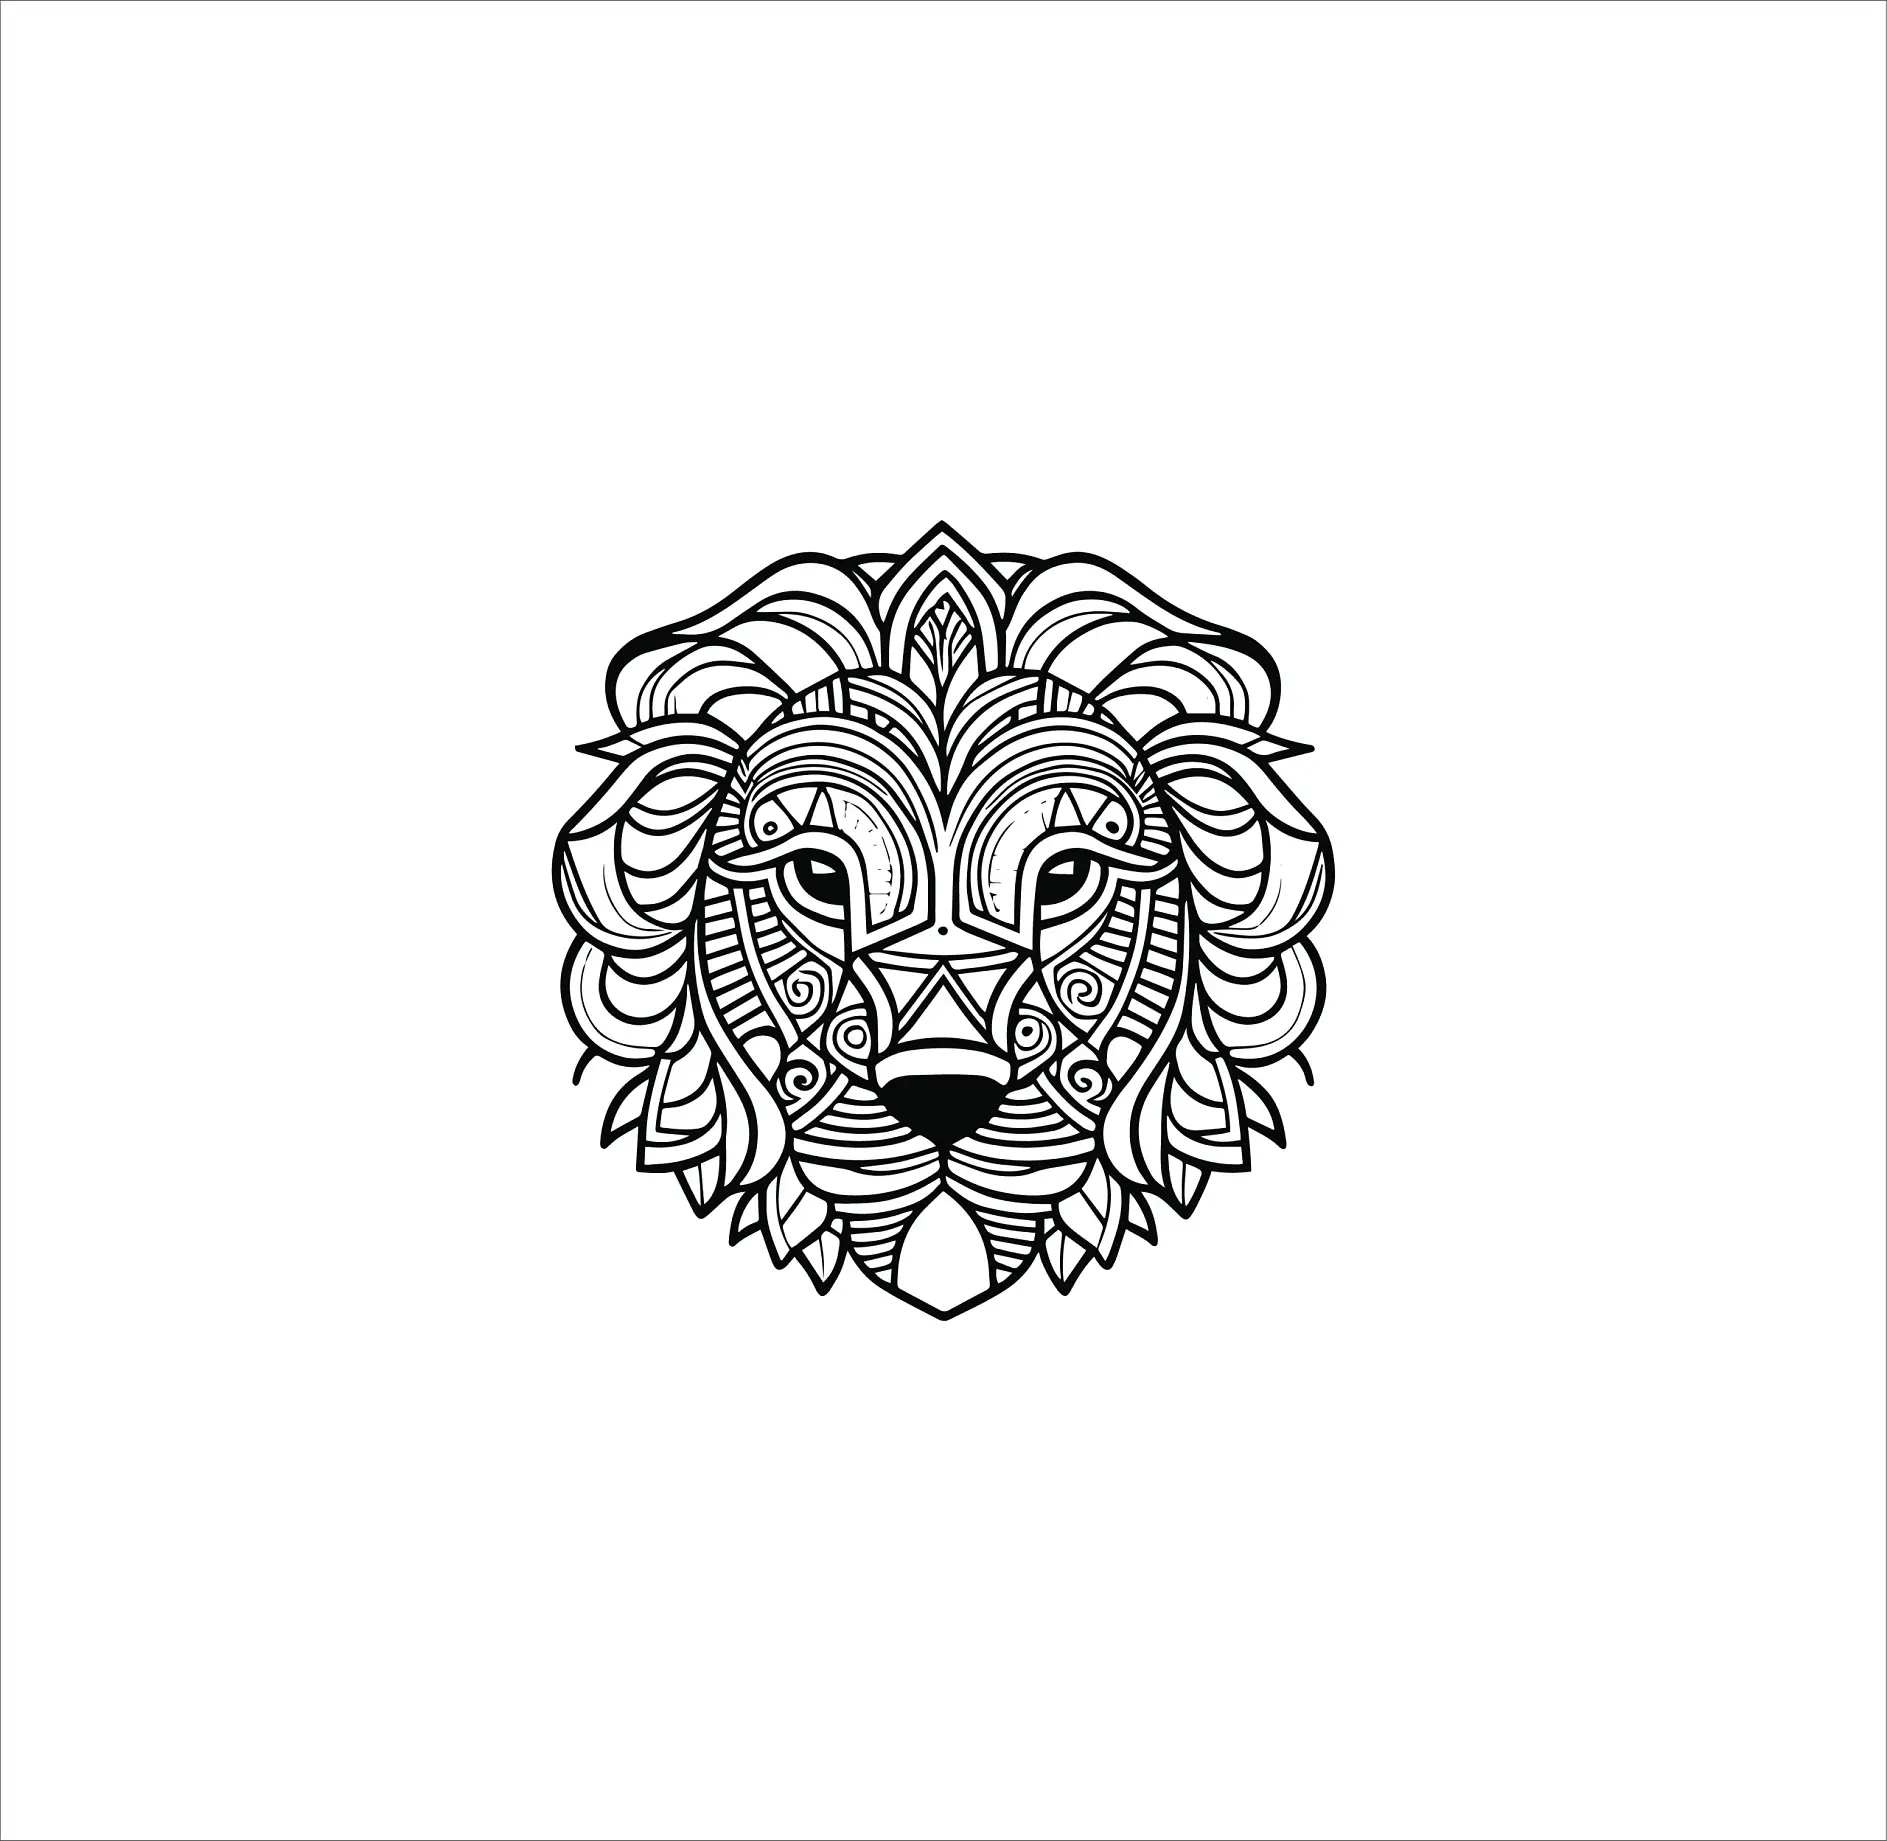 Ausmalbild Mandala mit Löwenkopf und dekorativen und symmetrischen Mustern